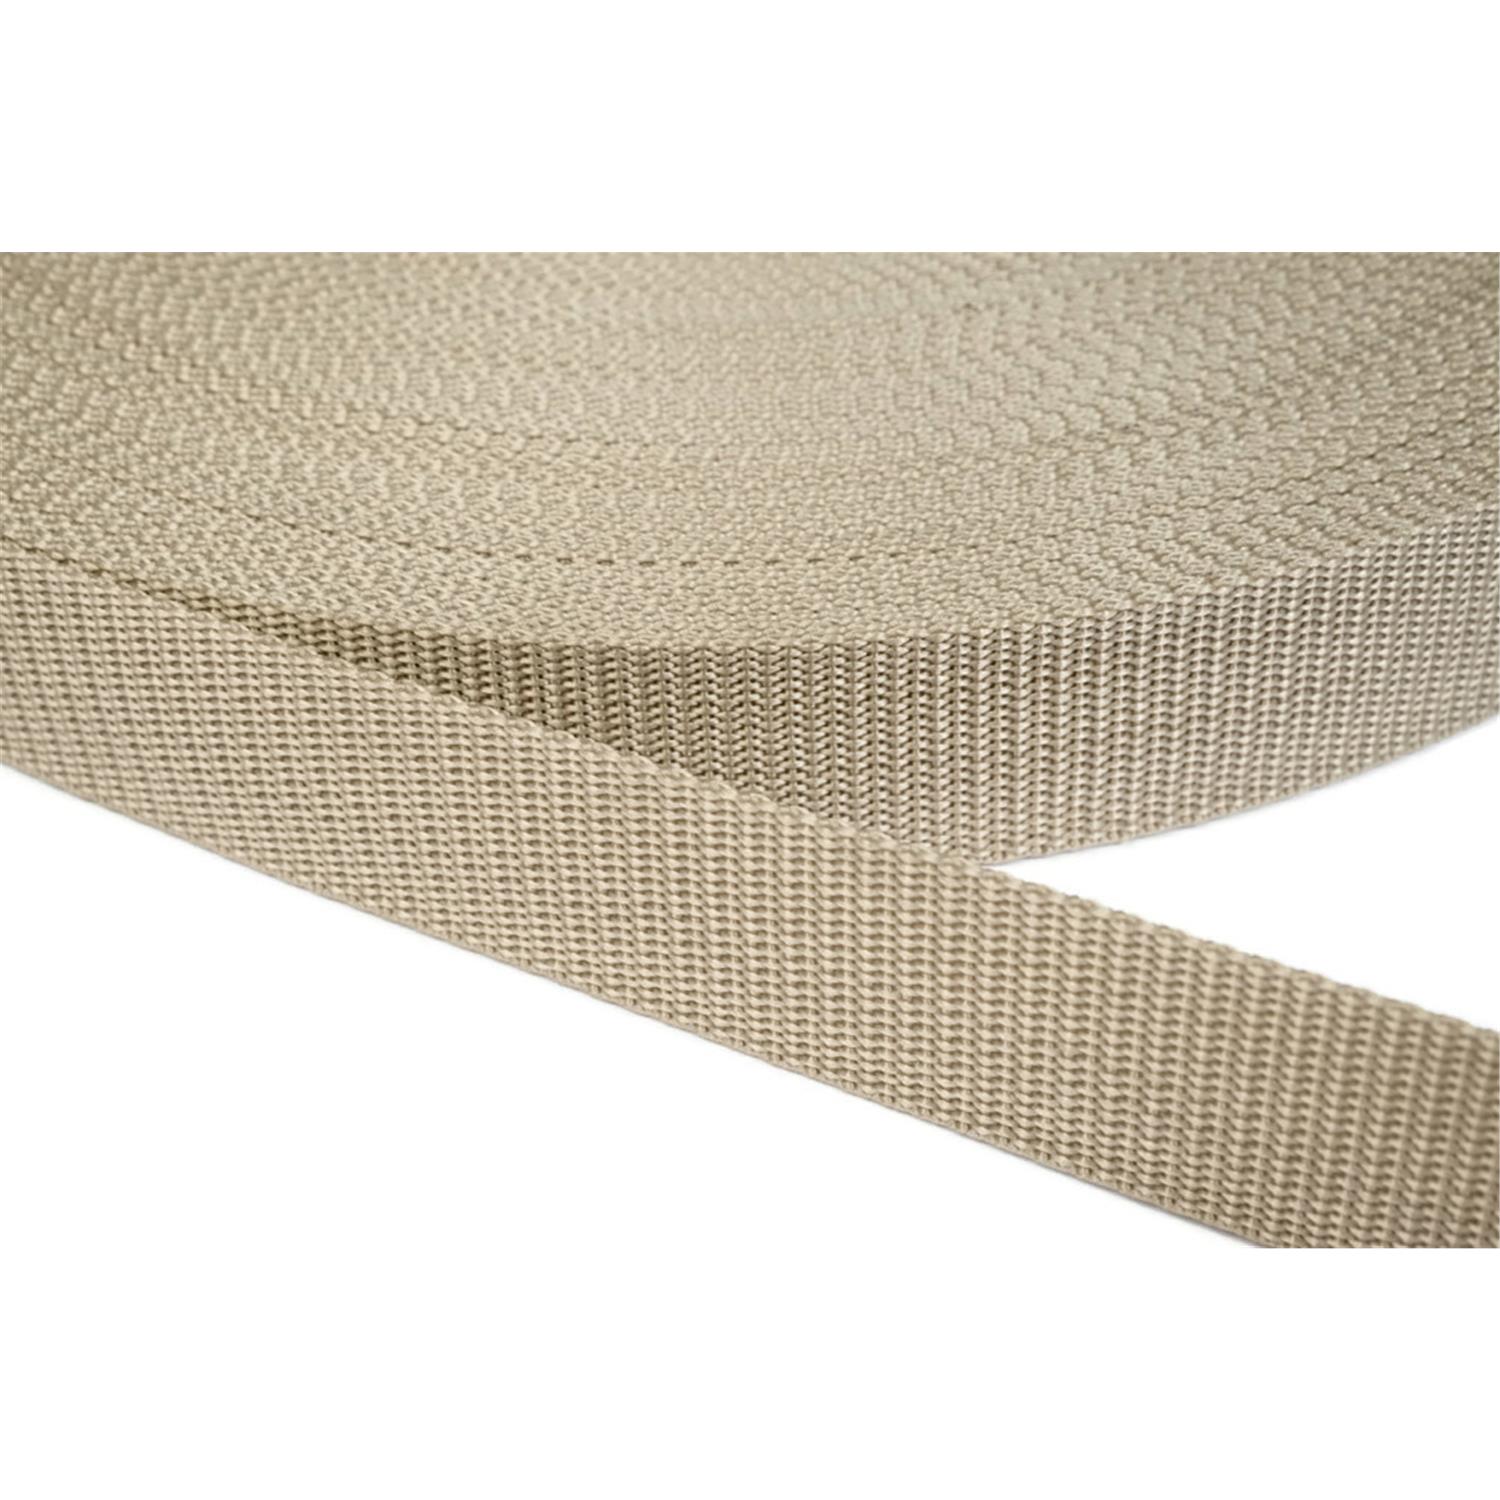 Gurtband 50mm breit aus Polypropylen in 41 Farben 03 - beige 6 Meter